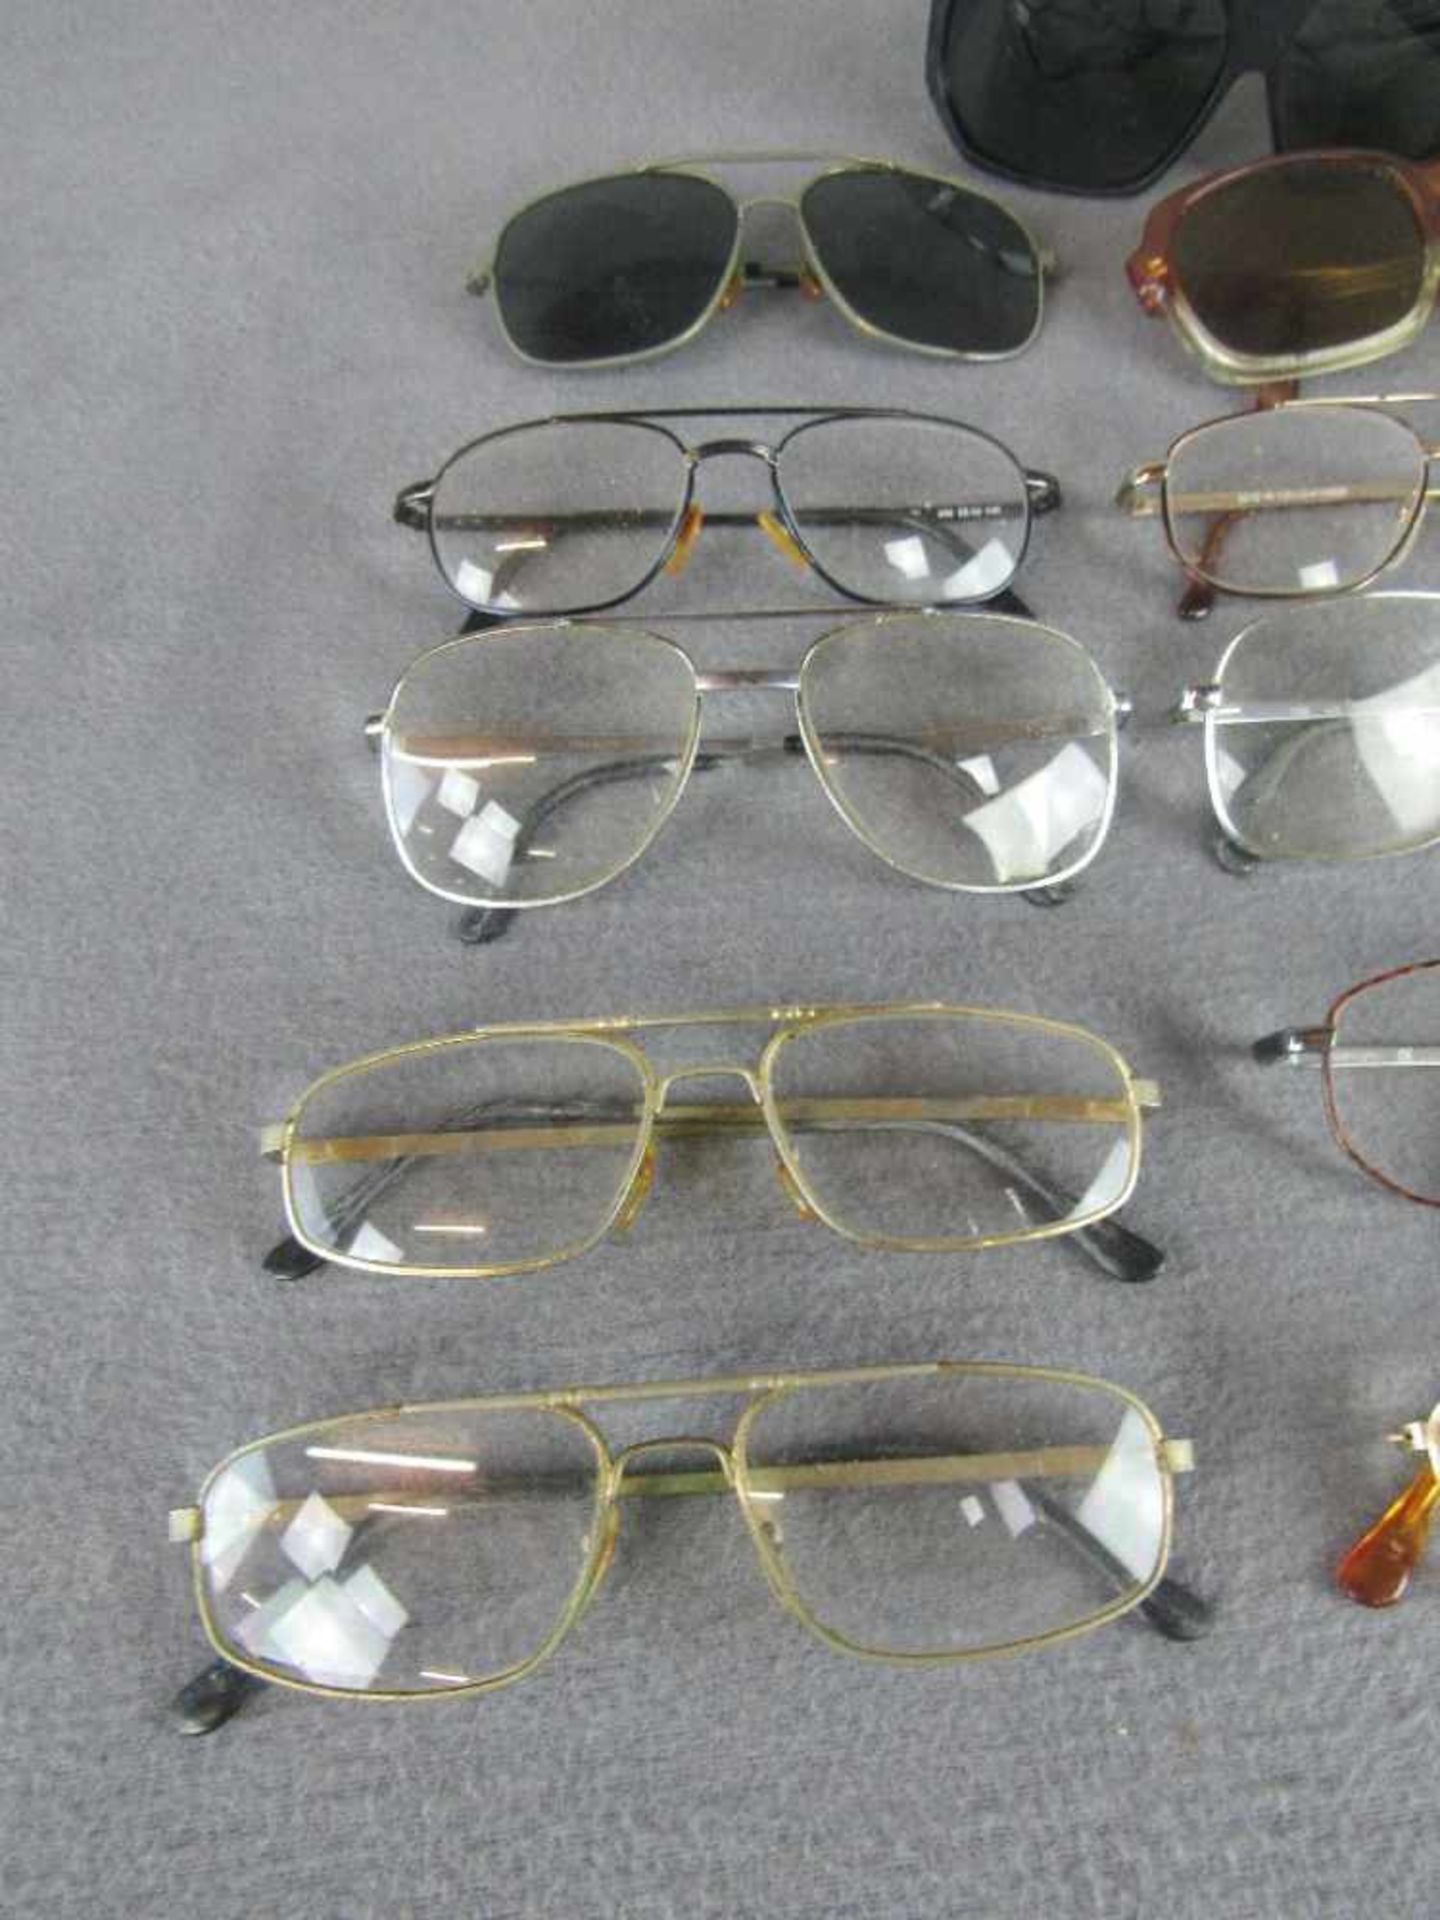 Großes Konvolut Brillen teilweise antik unsortiert ungeprüft - Image 2 of 4